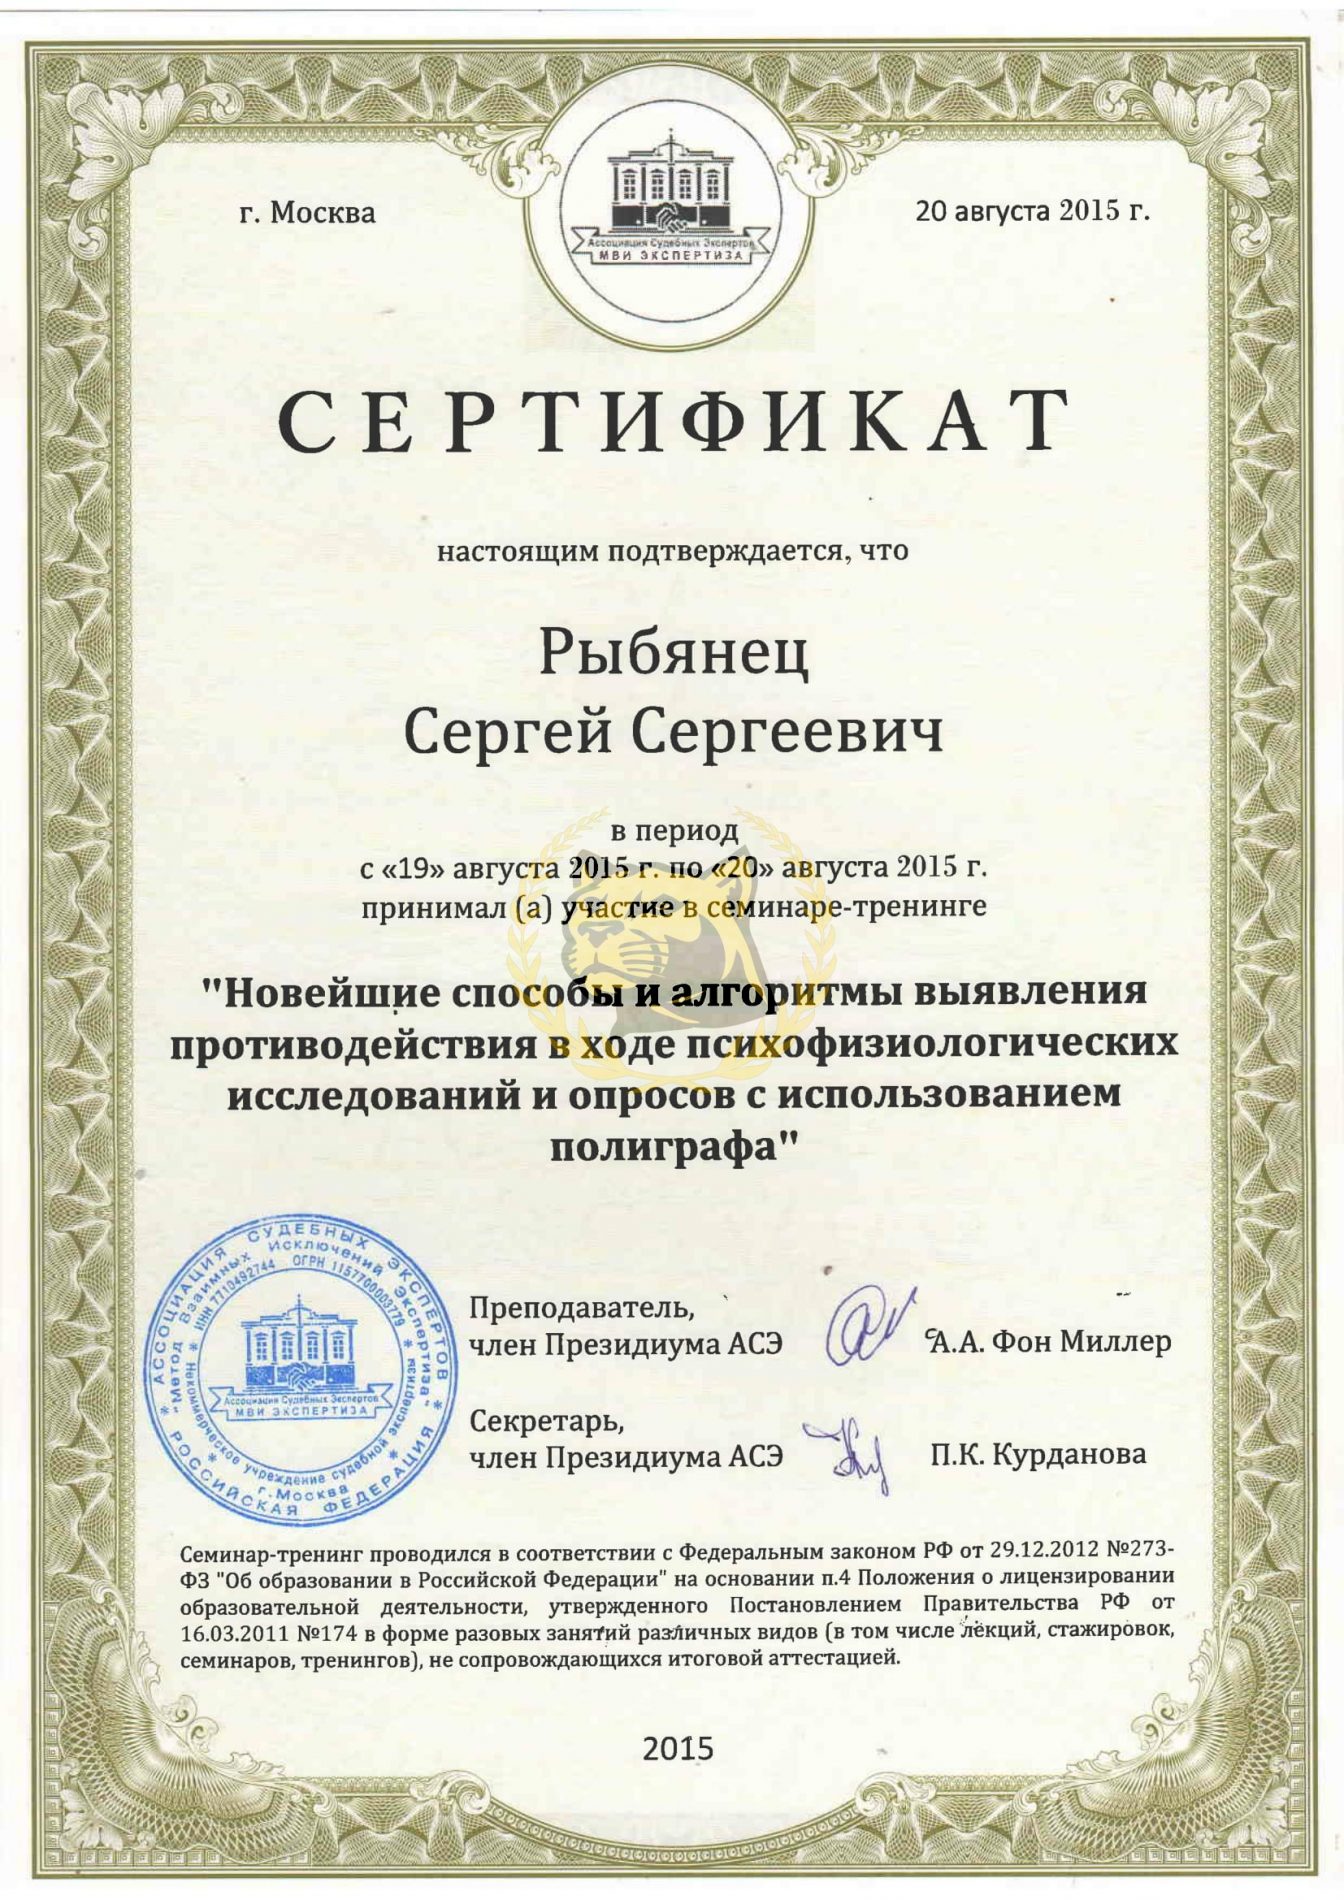 Сертификат по новейшим способам использования полиграфа